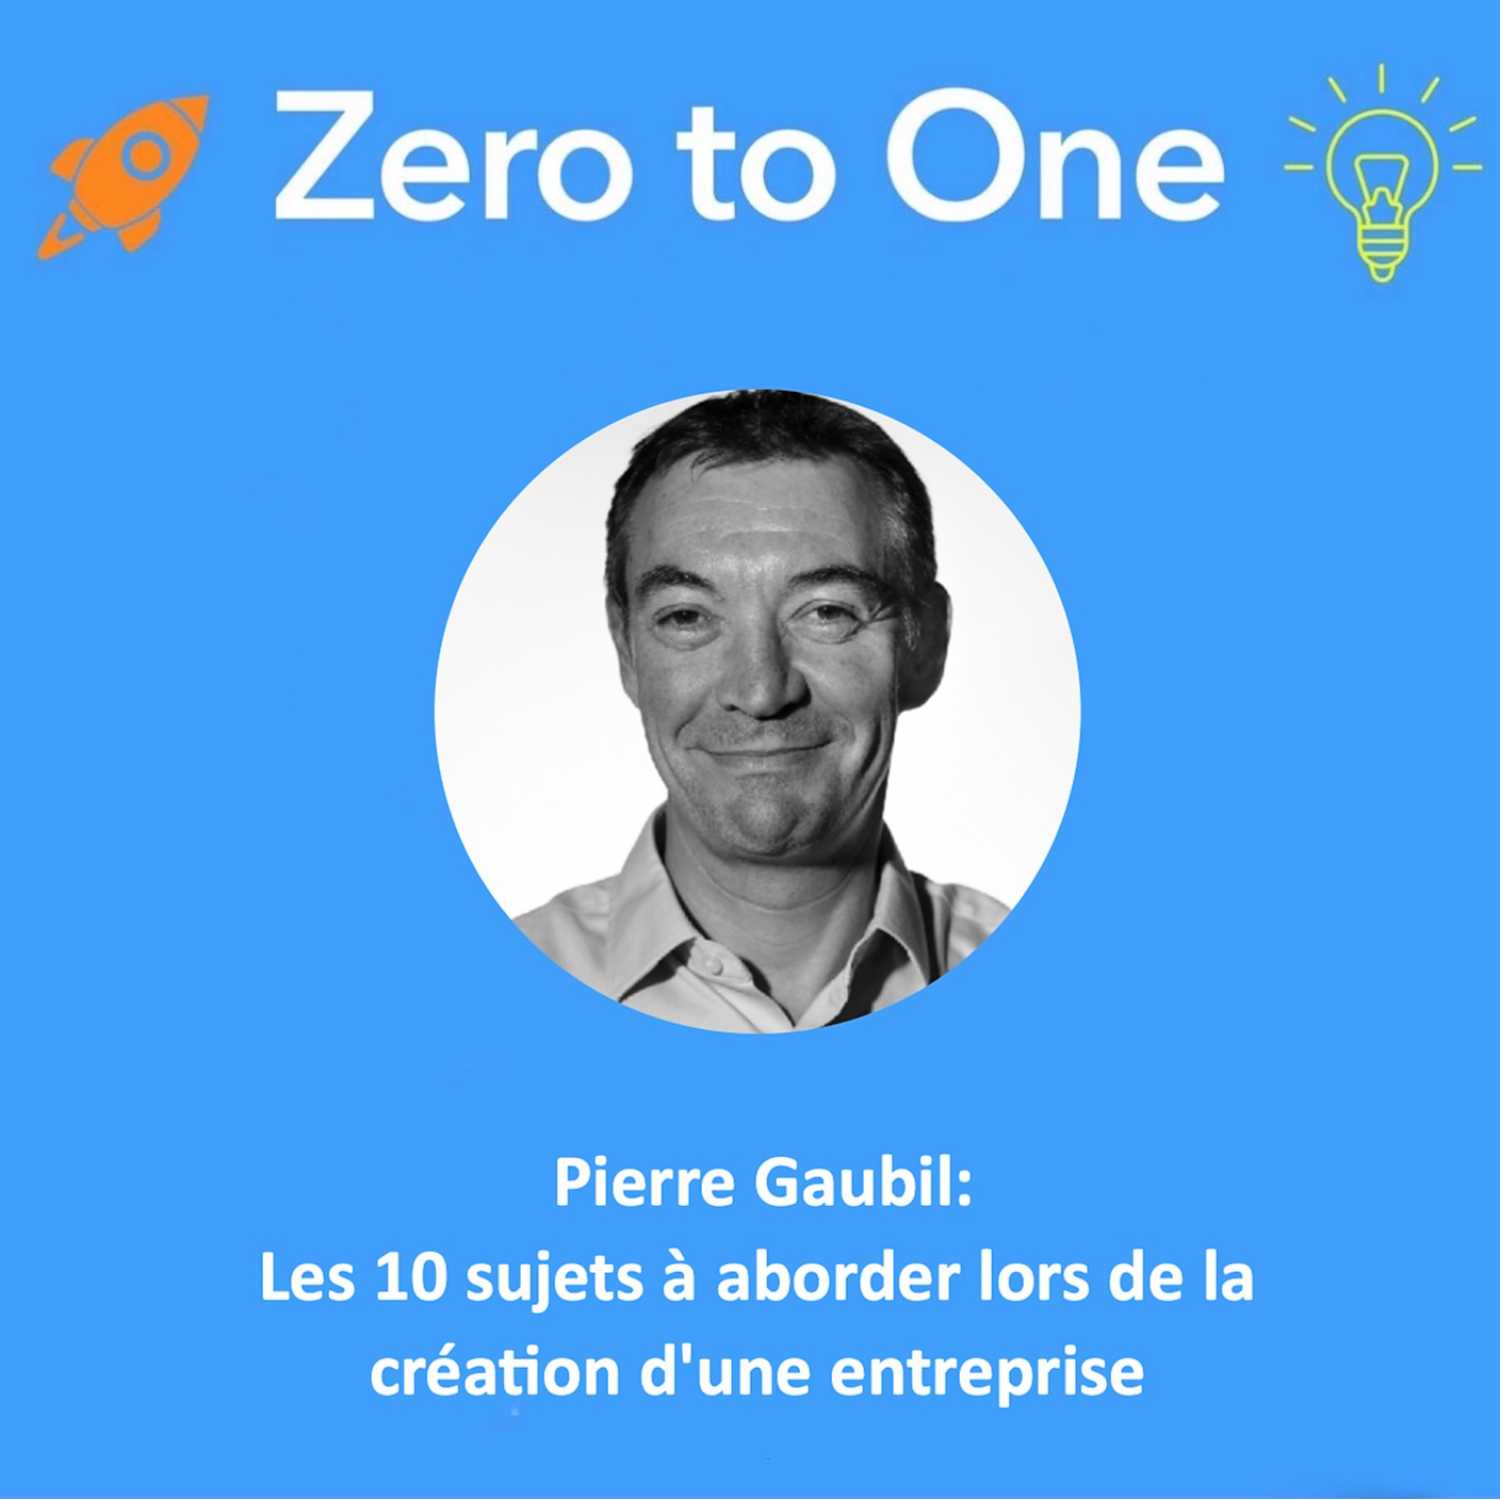 Pierre Gaubil: Les 10 sujets à aborder lors de la création d'une entreprise 🎤